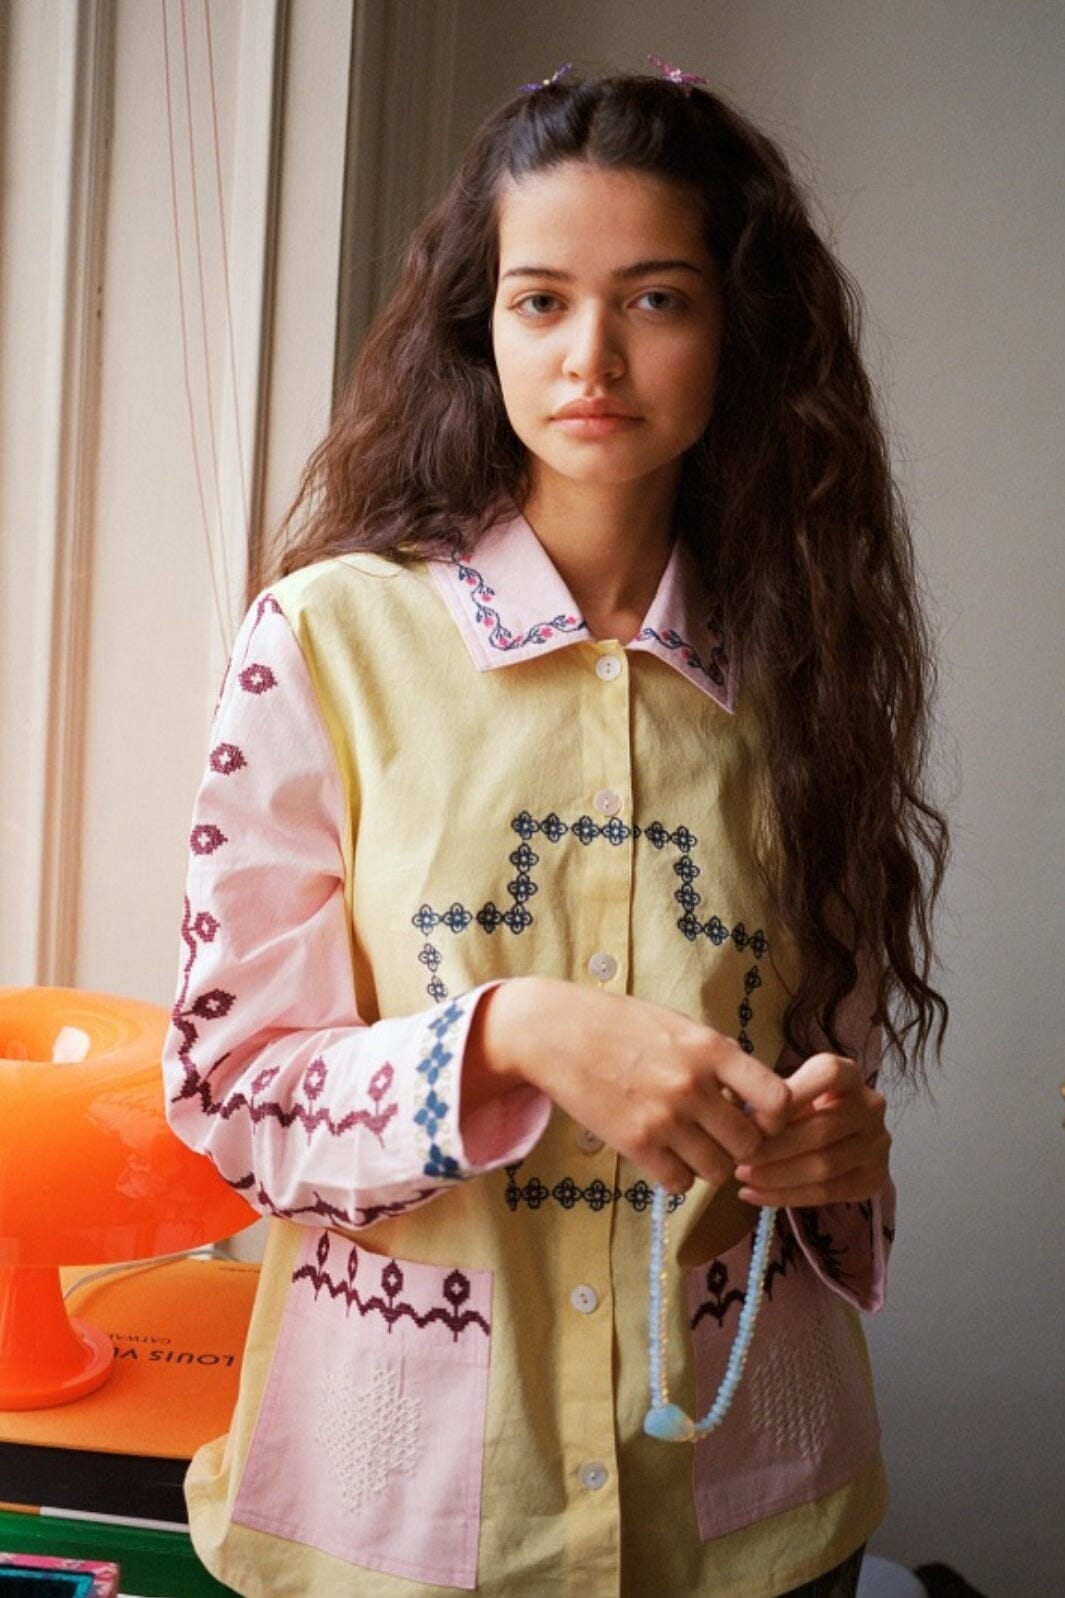 Forudbestilling - Sissel Edelbo - Louise Organic Cotton Shirt SE 1204 - Pastel Skjorter 